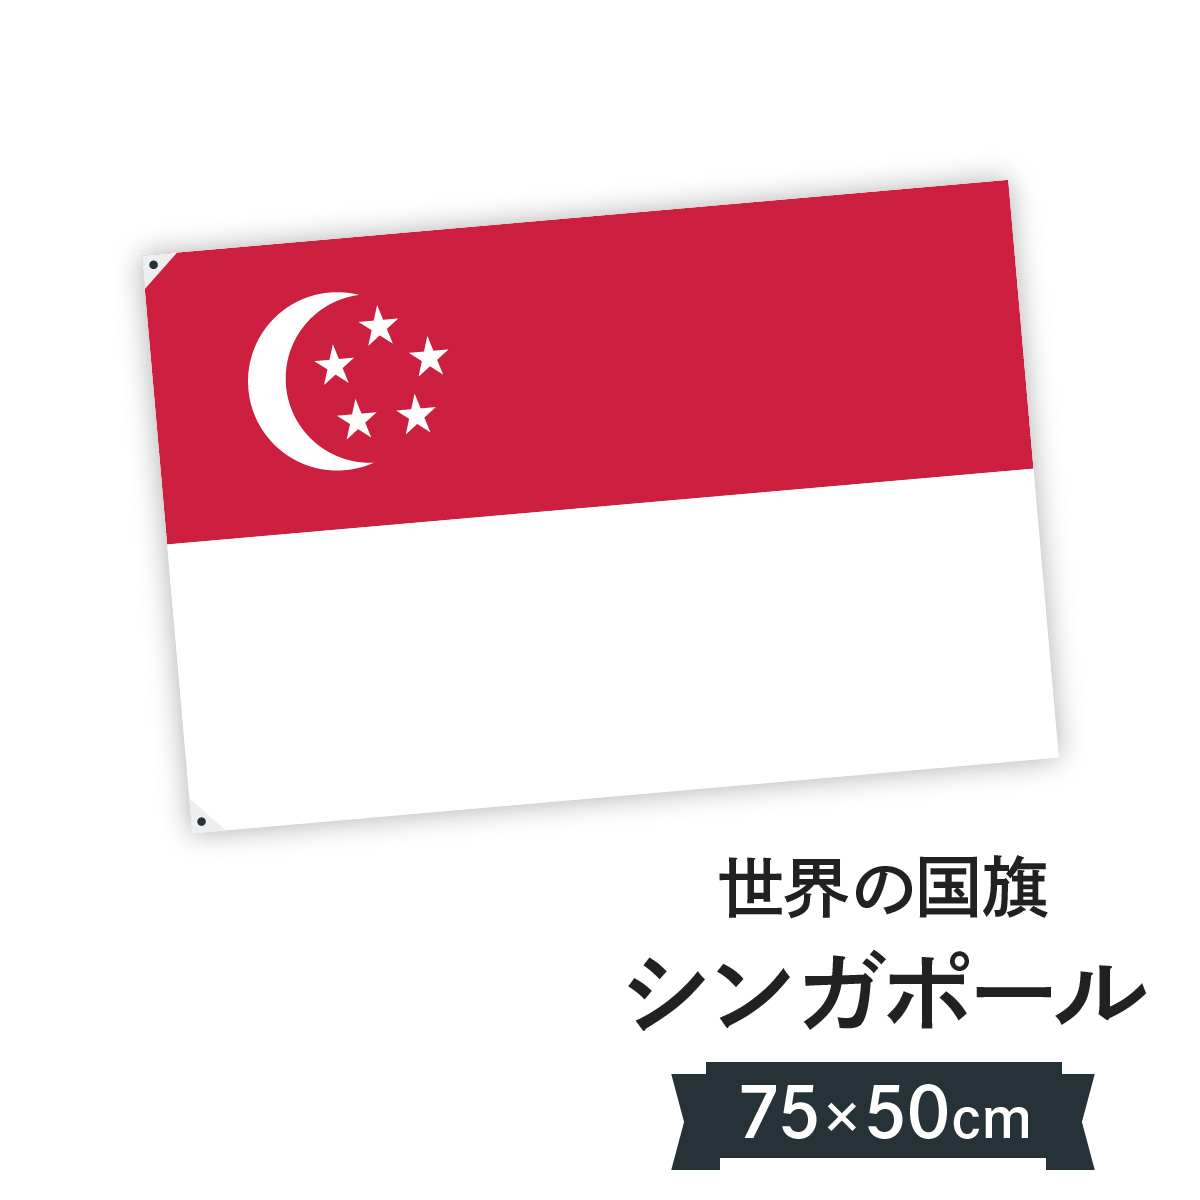 楽天市場 シンガポール共和国 国旗 W75cm H50cm グッズプロ